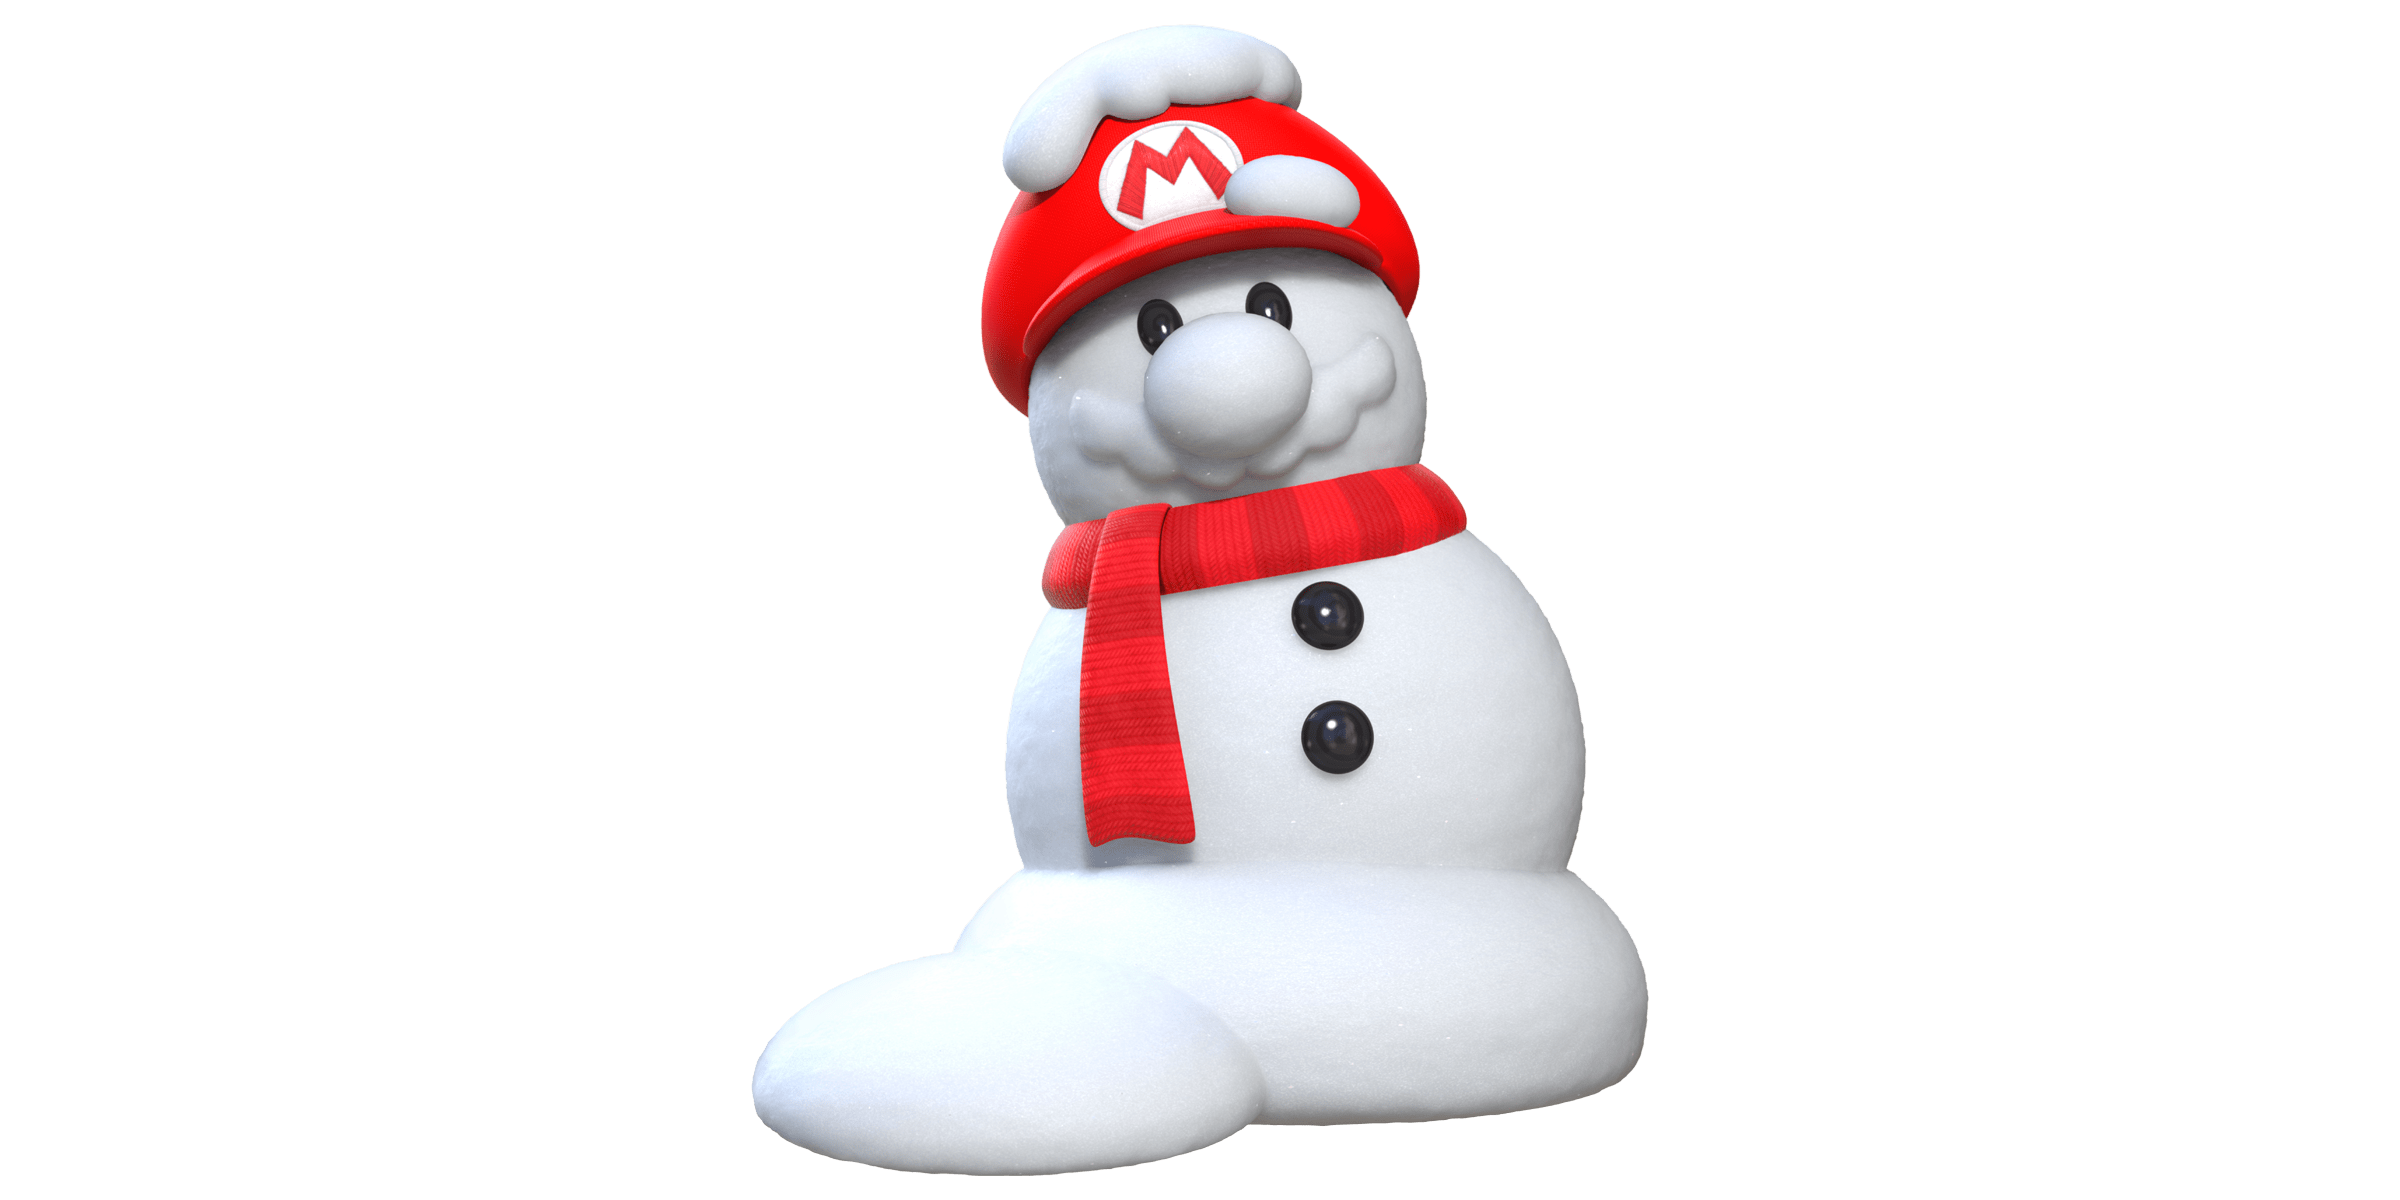 Snowman Mario